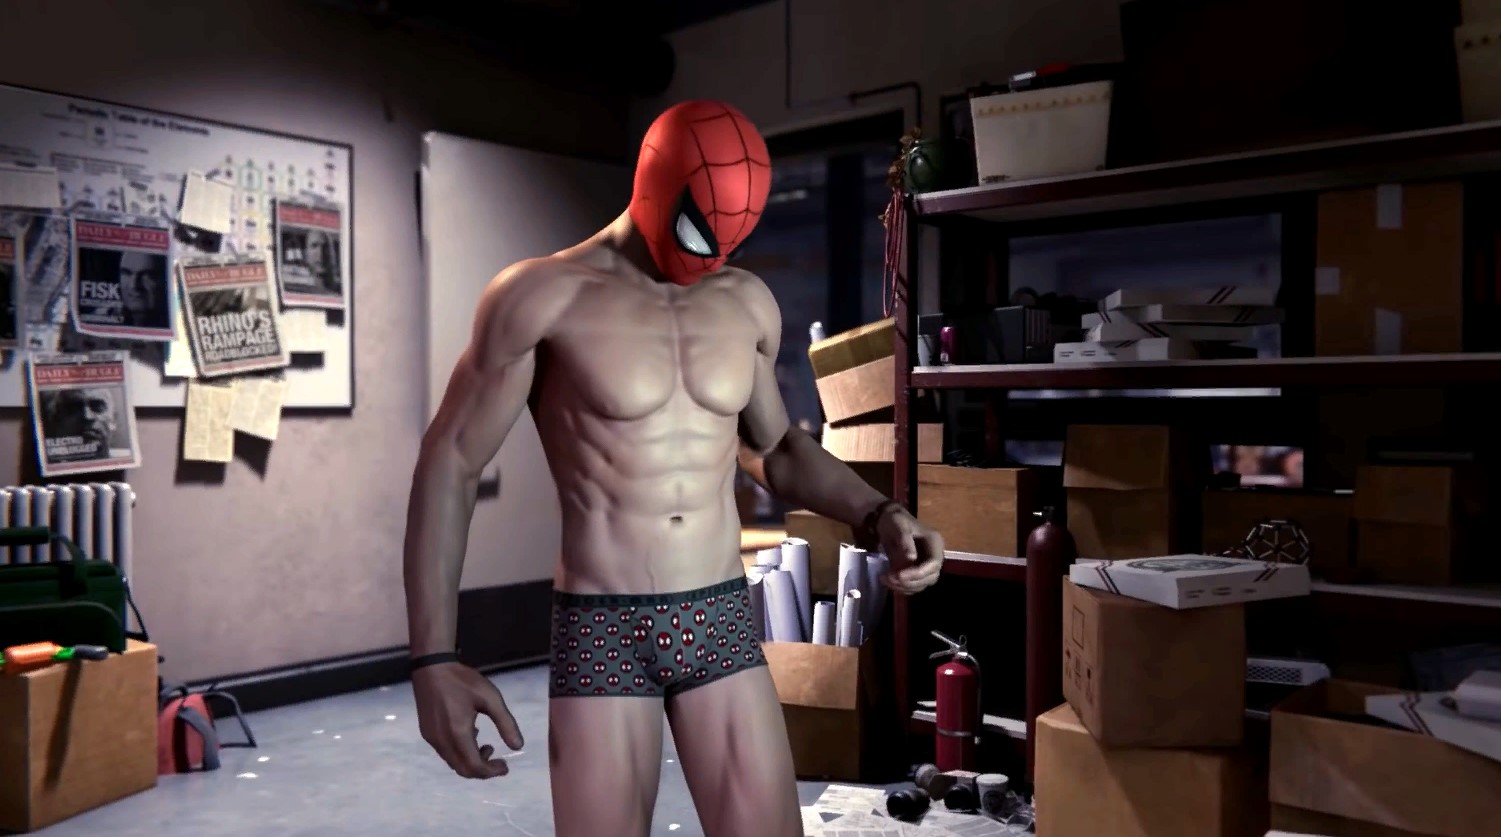 Конечно, главным вопросом здесь должно быть: "Почему Человек-паук носи...